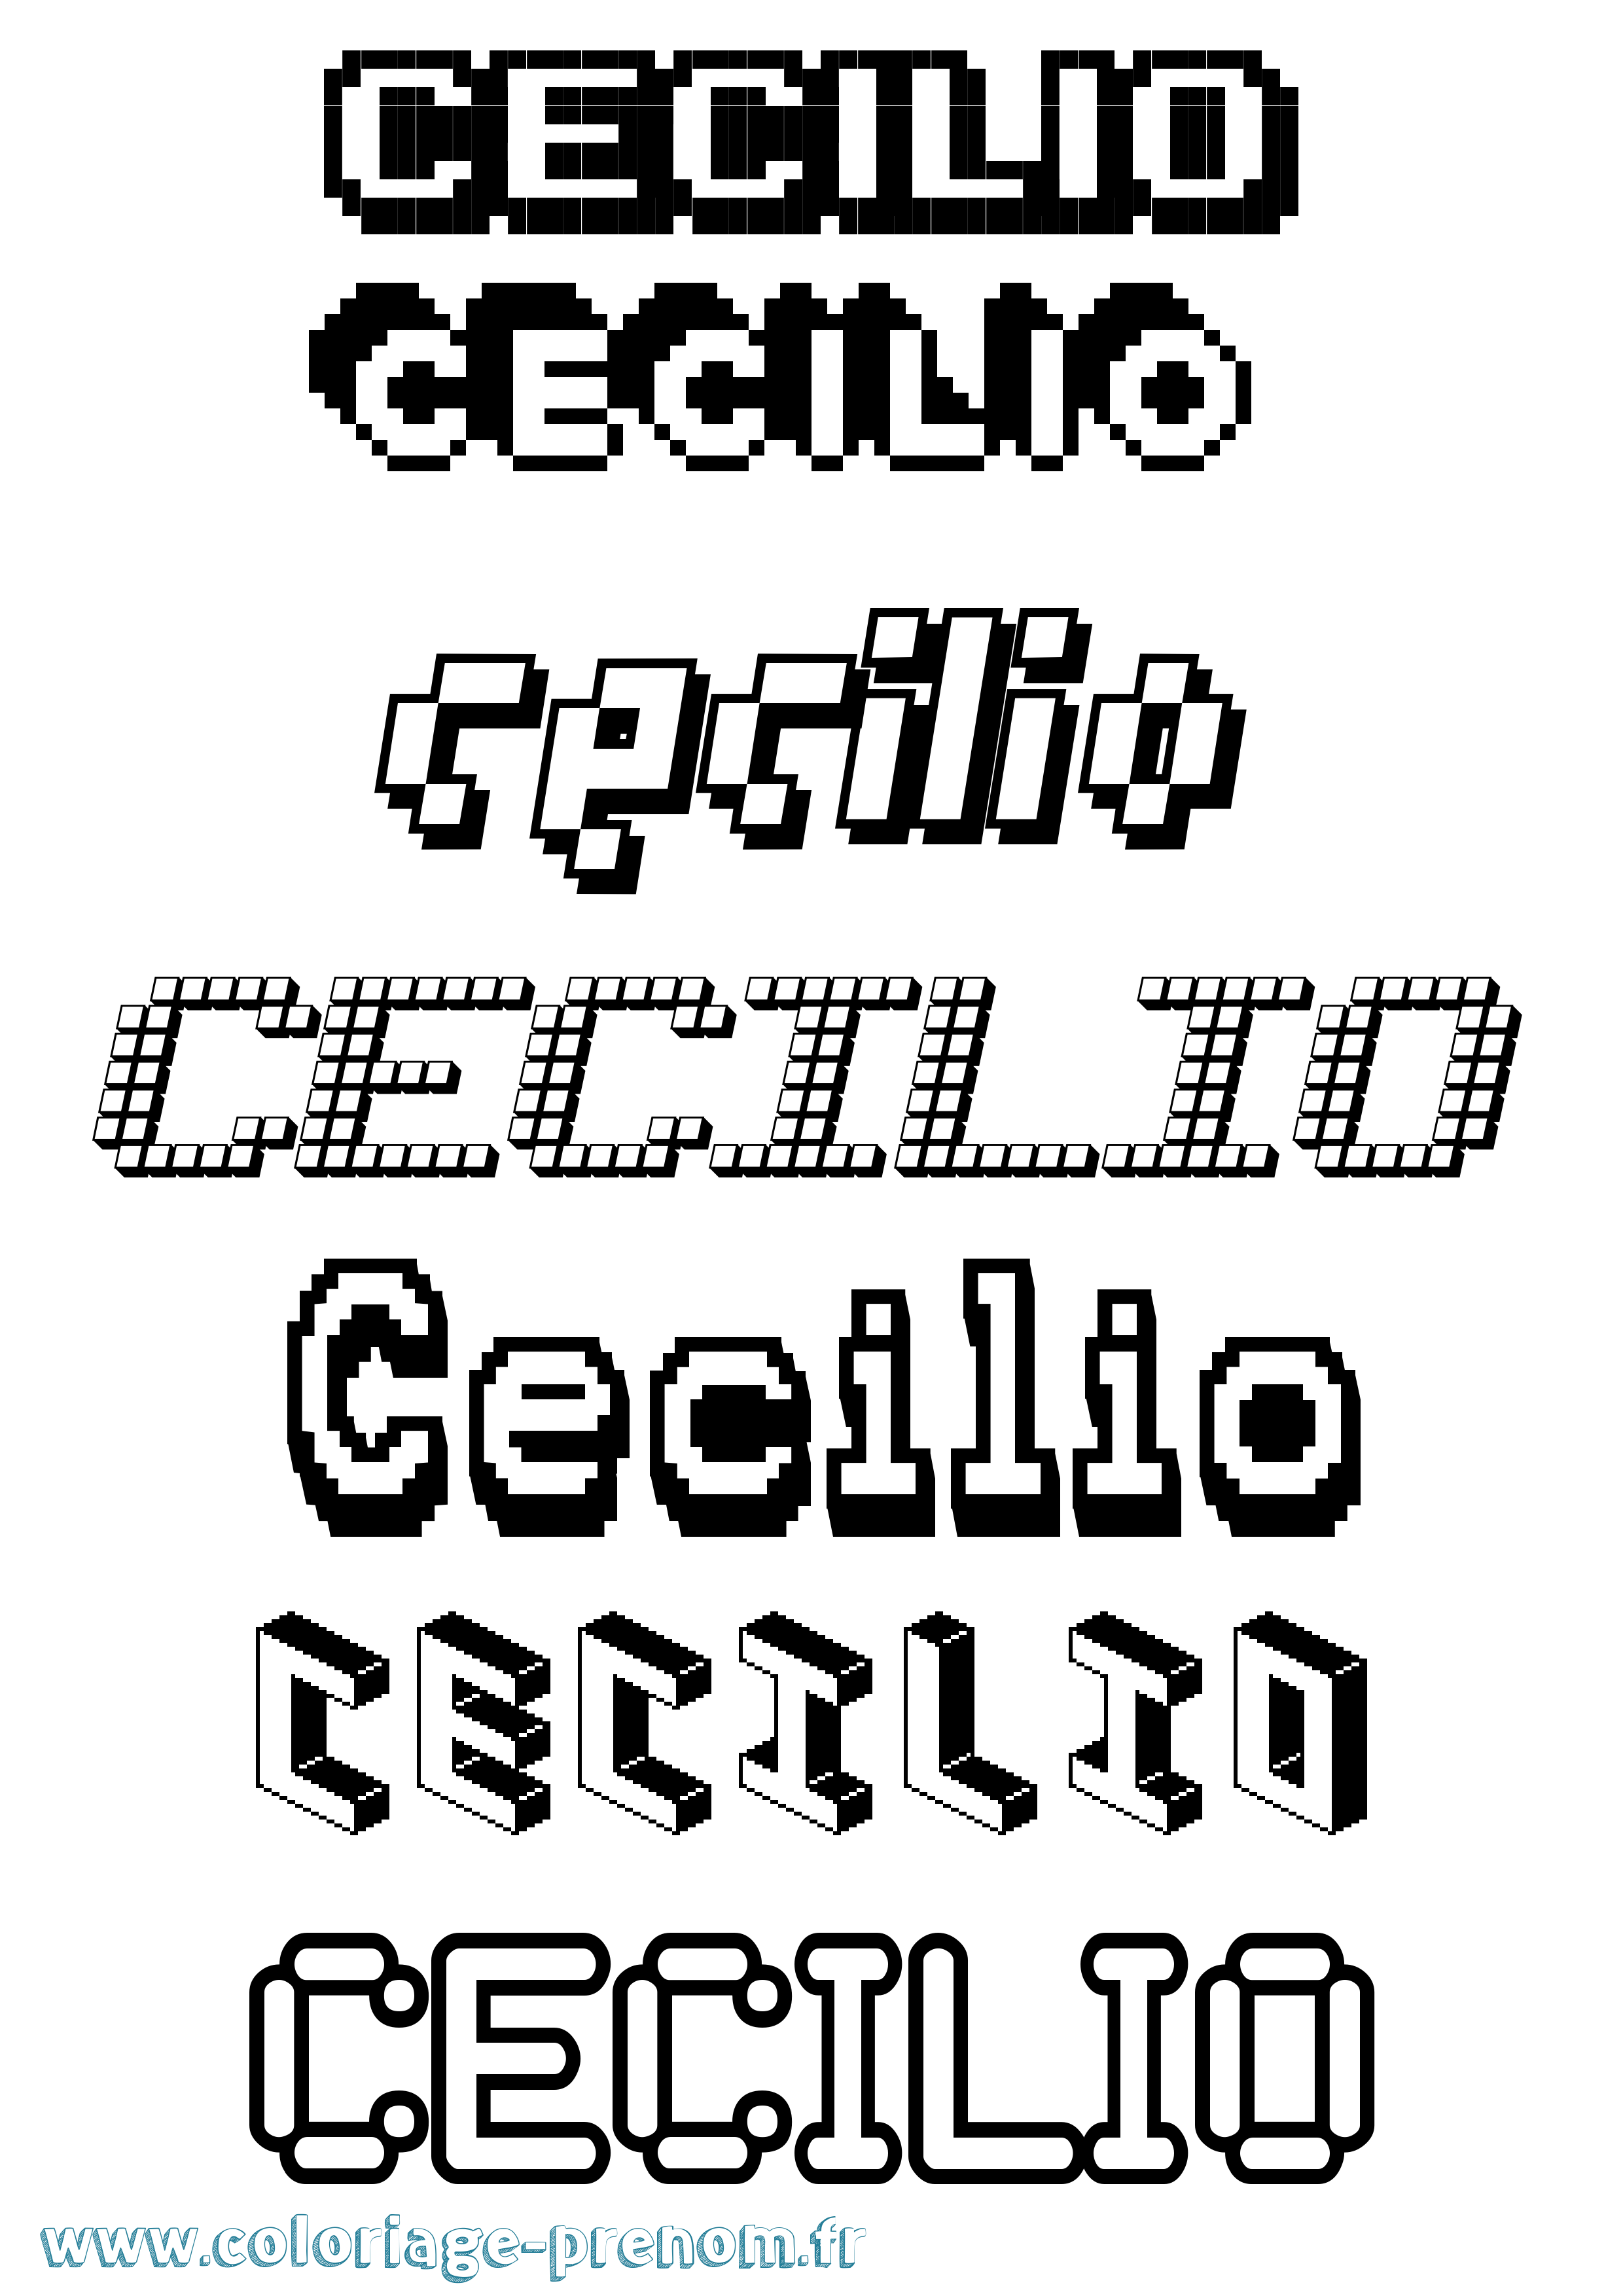 Coloriage prénom Cecilio Pixel